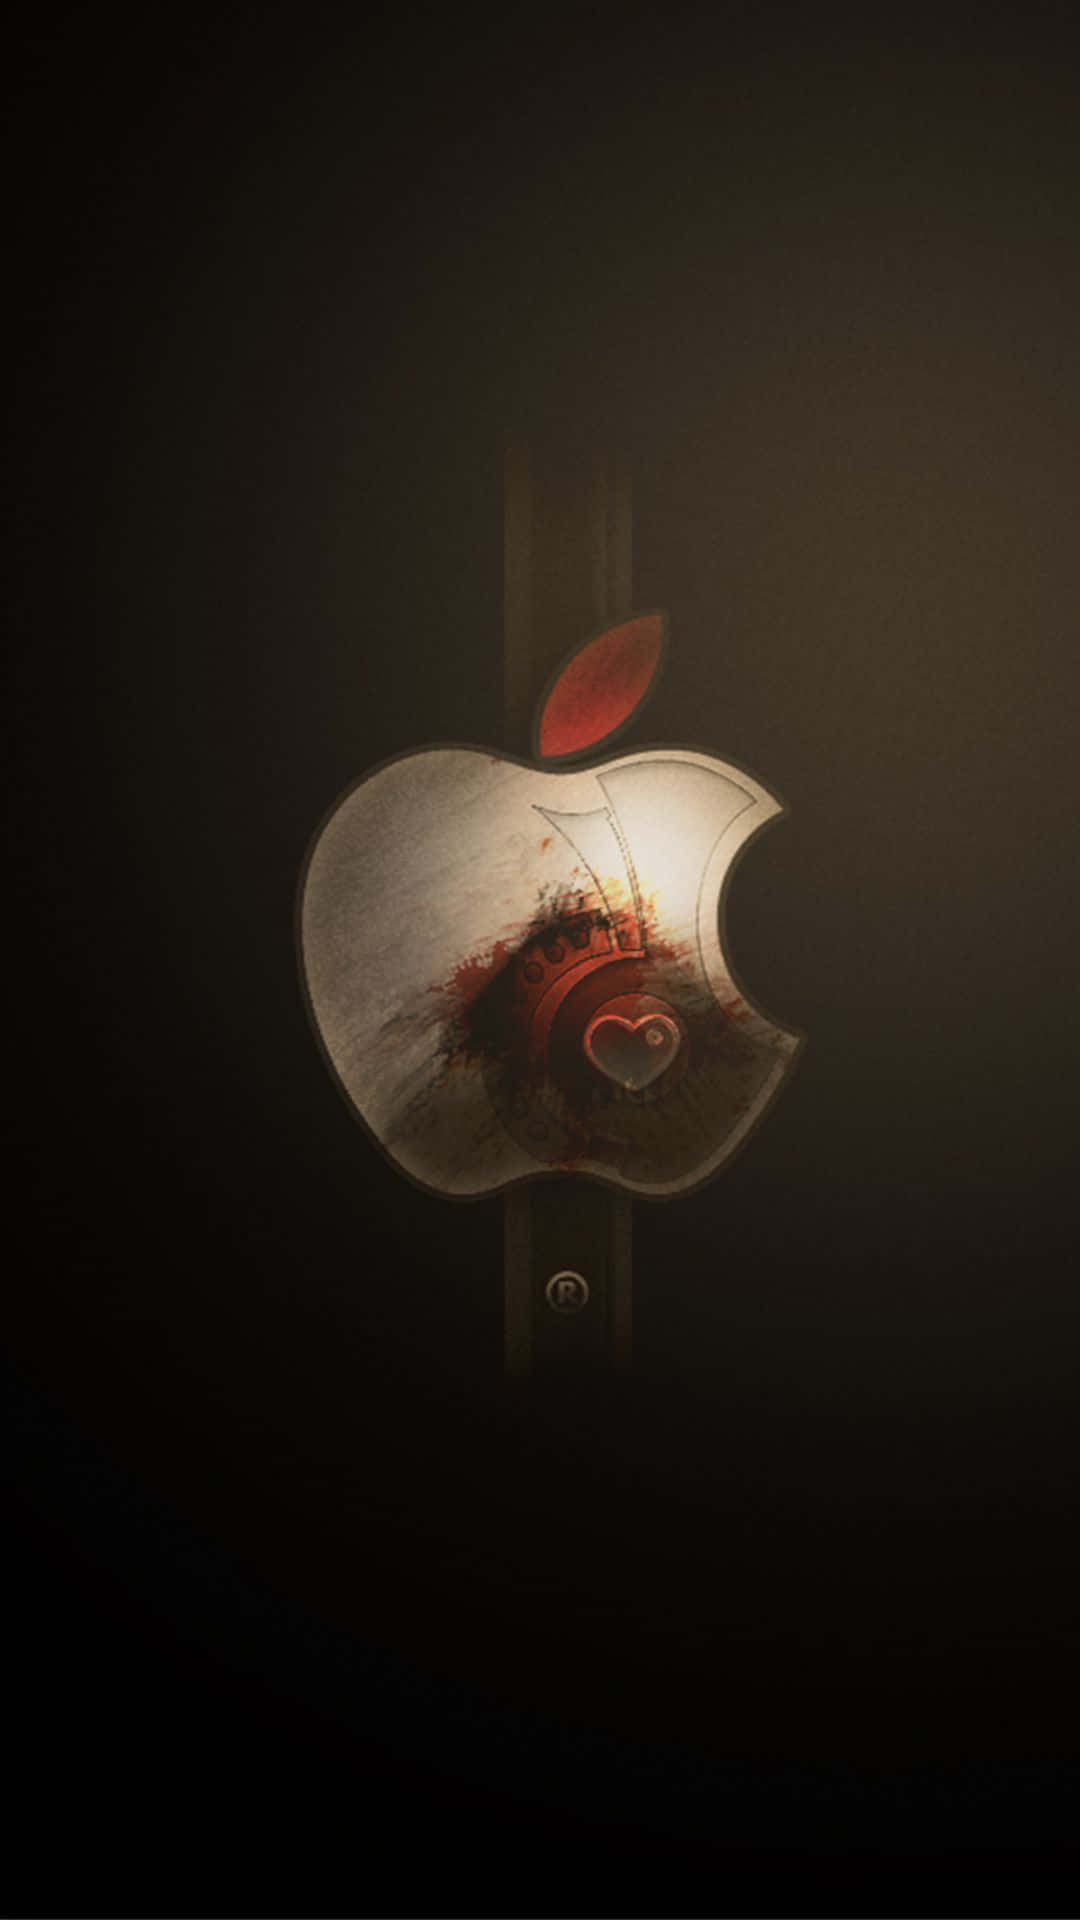 Oicônico Logo Da Apple Em Um Iphone X. Papel de Parede